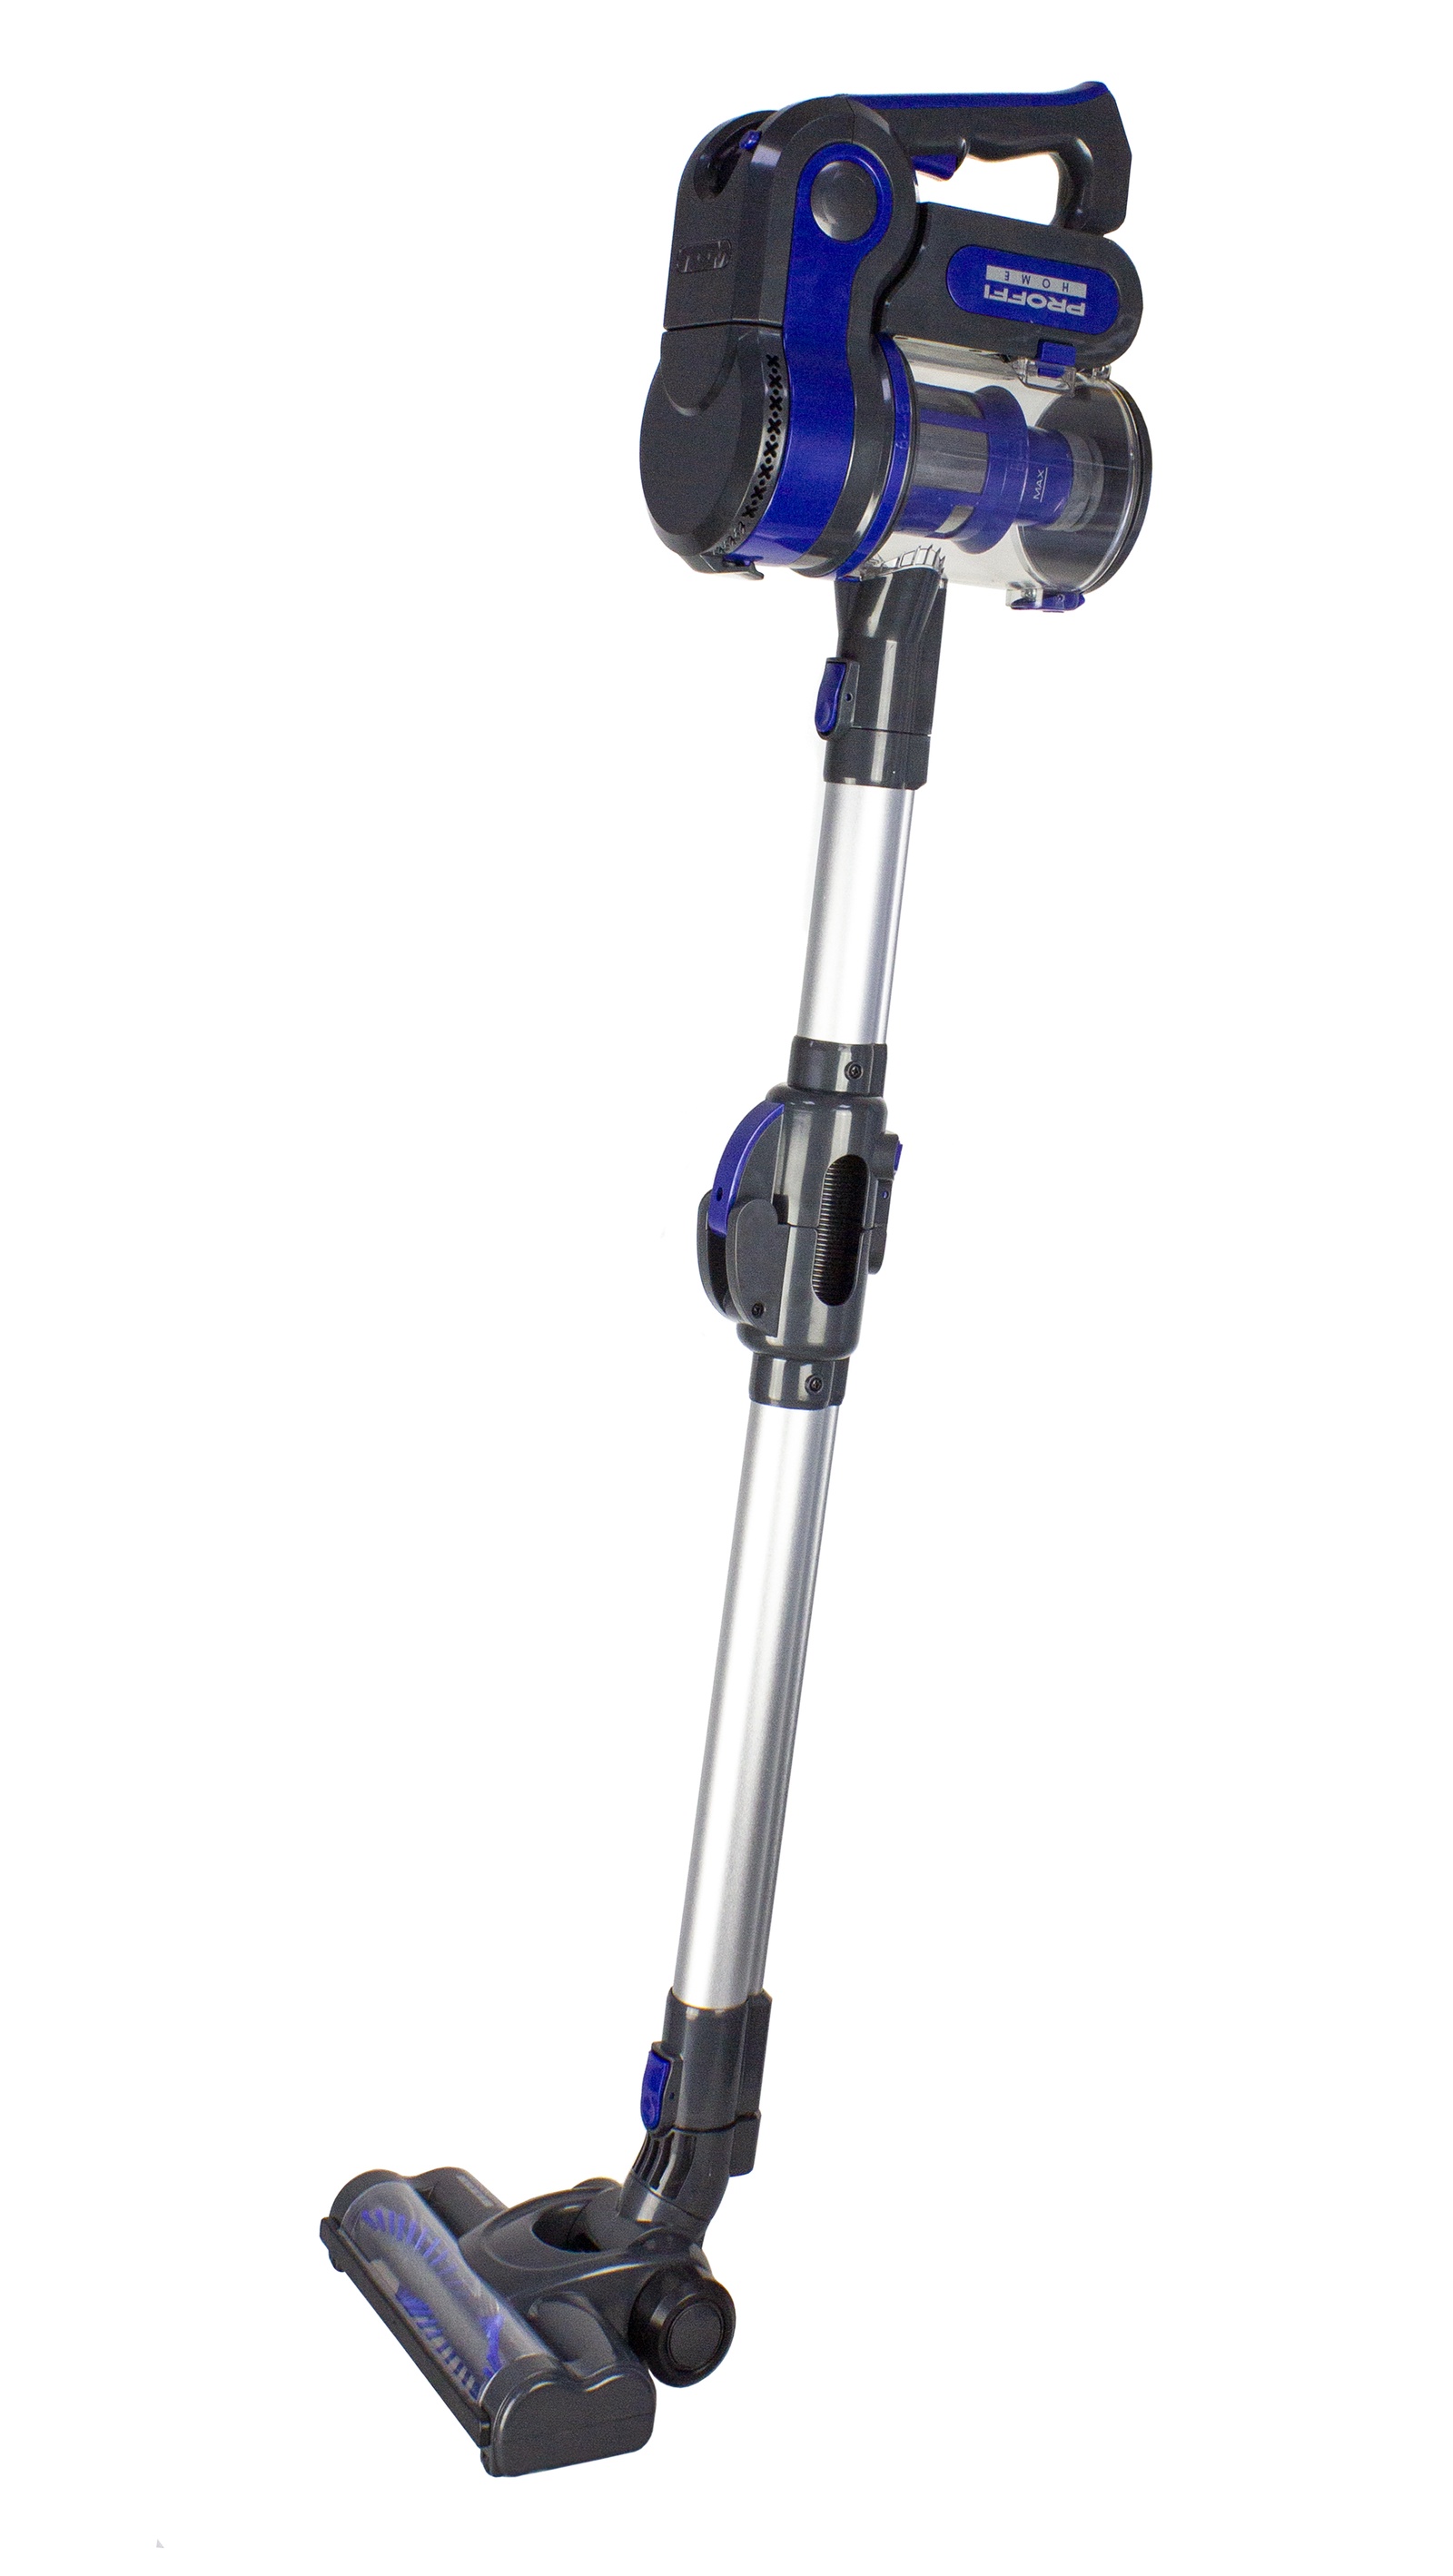 фото Вертикальный пылесос PROFFI Smart Stick 2-в-1 PH8816 с гибкой телескопической трубкой и электротурбощеткой, безмешковый, фиолетовый/серебристый Proffi home